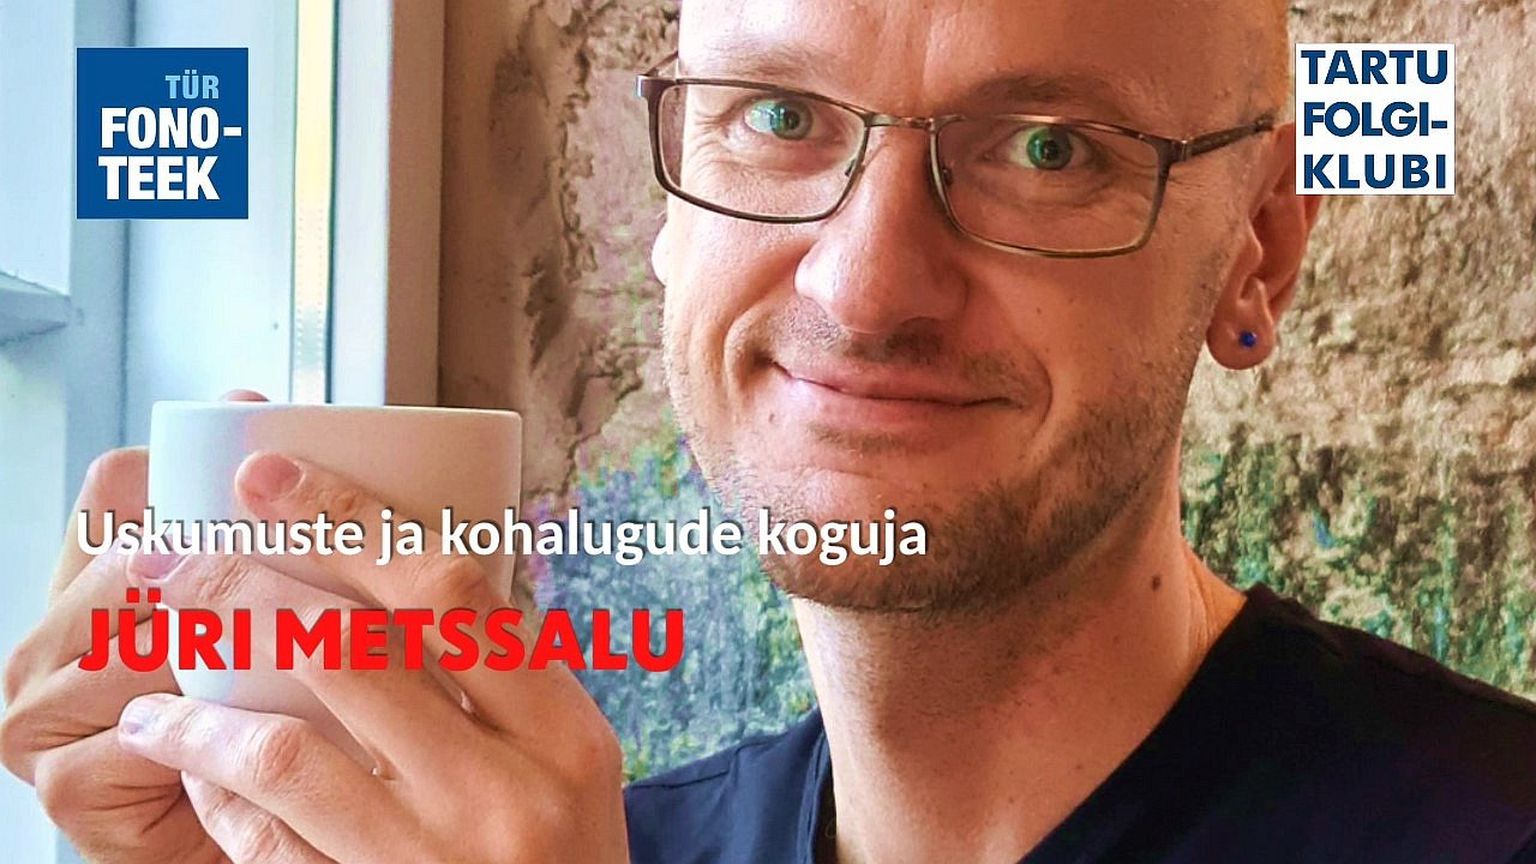 Tartu Folgiklubi külaliseks on kohapärimuse uurija Jüri Metssalu.